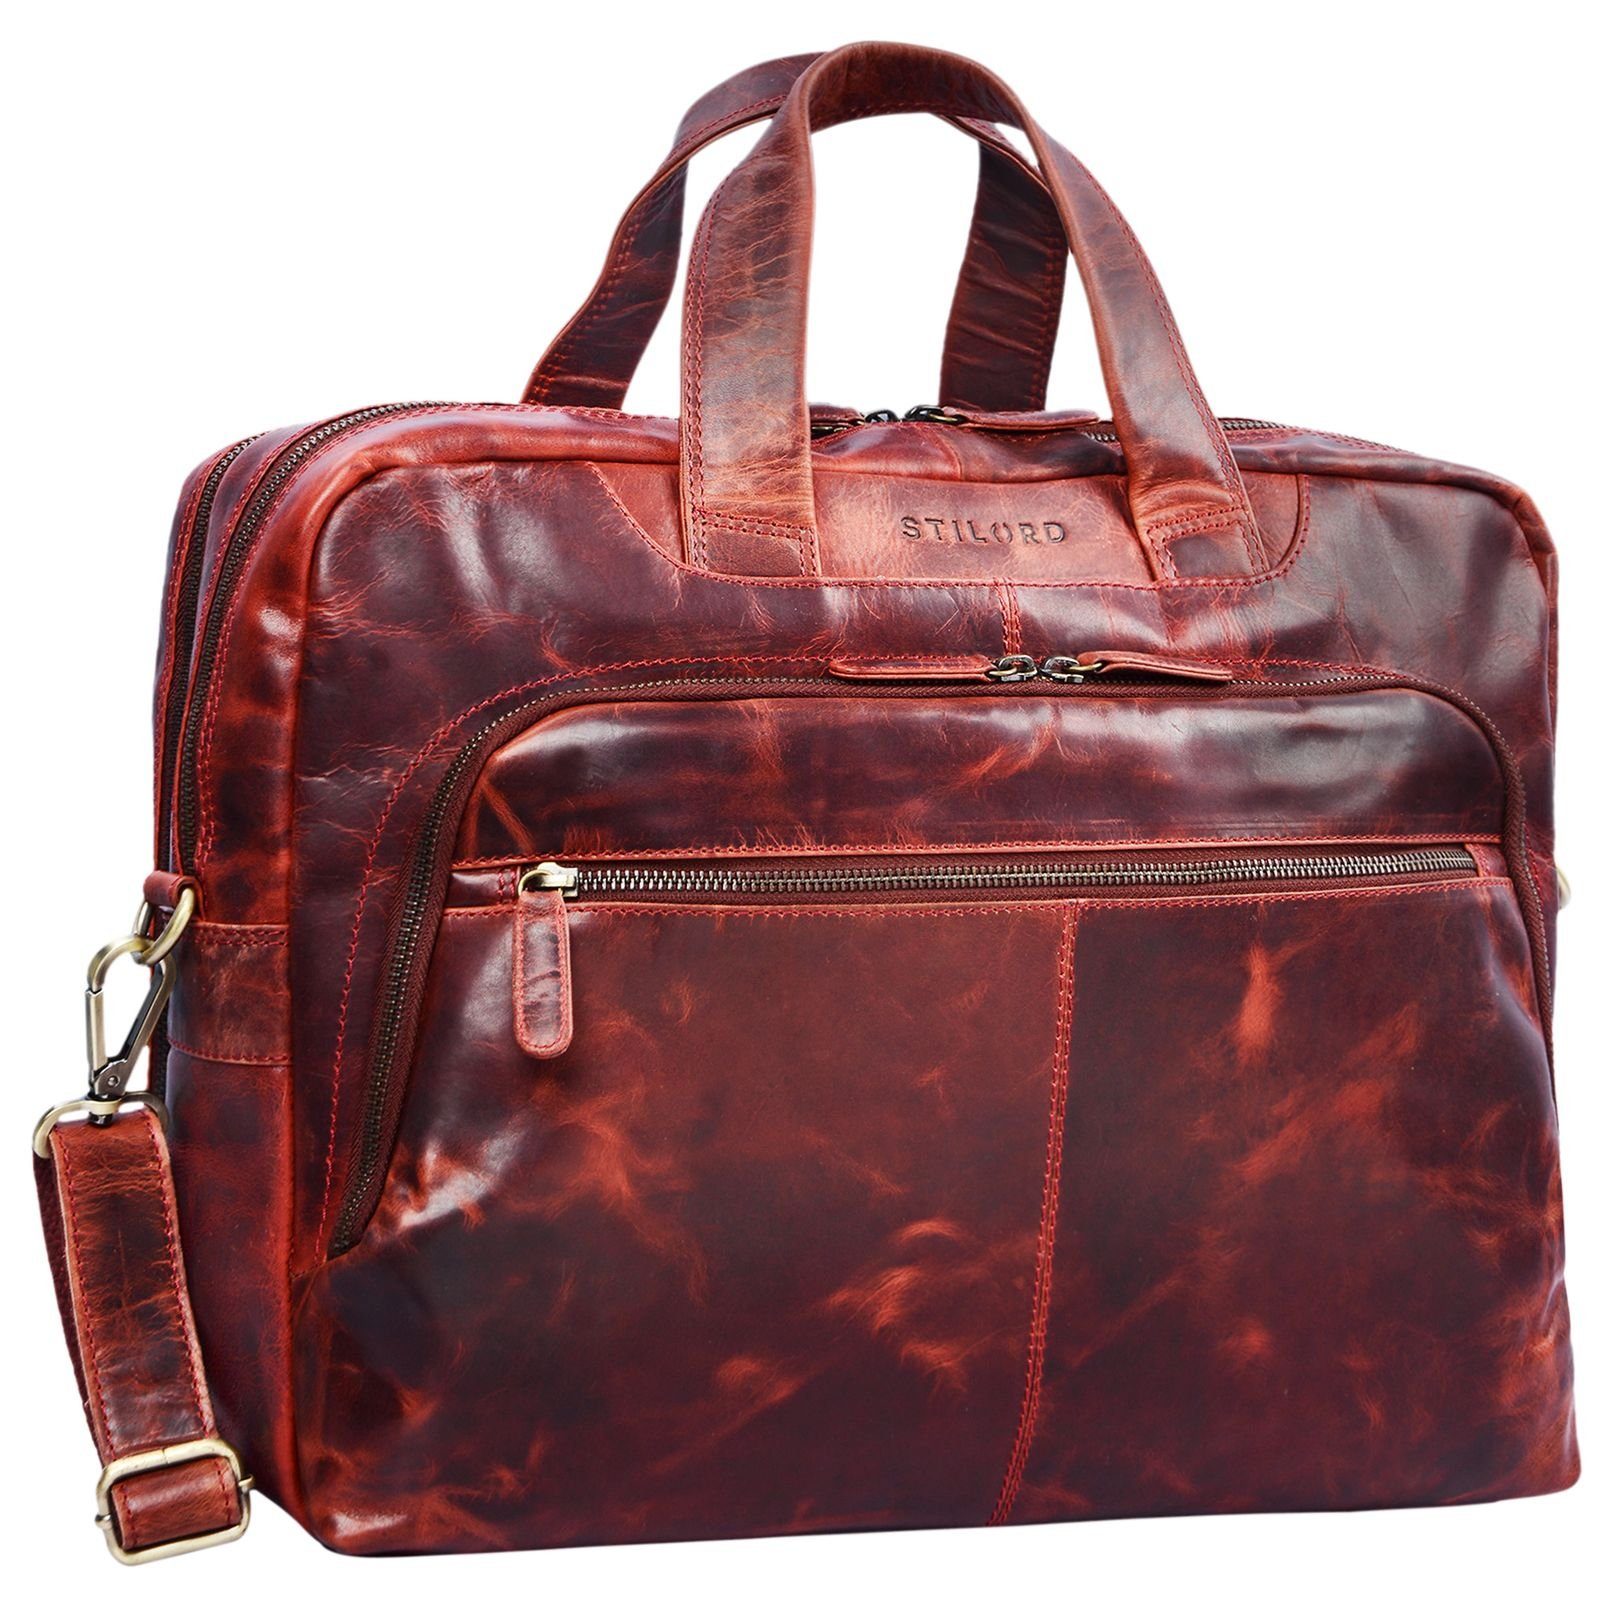 STILORD Laptoptasche "Lias" Umhängetasche Leder groß kara - rot | Businesstaschen